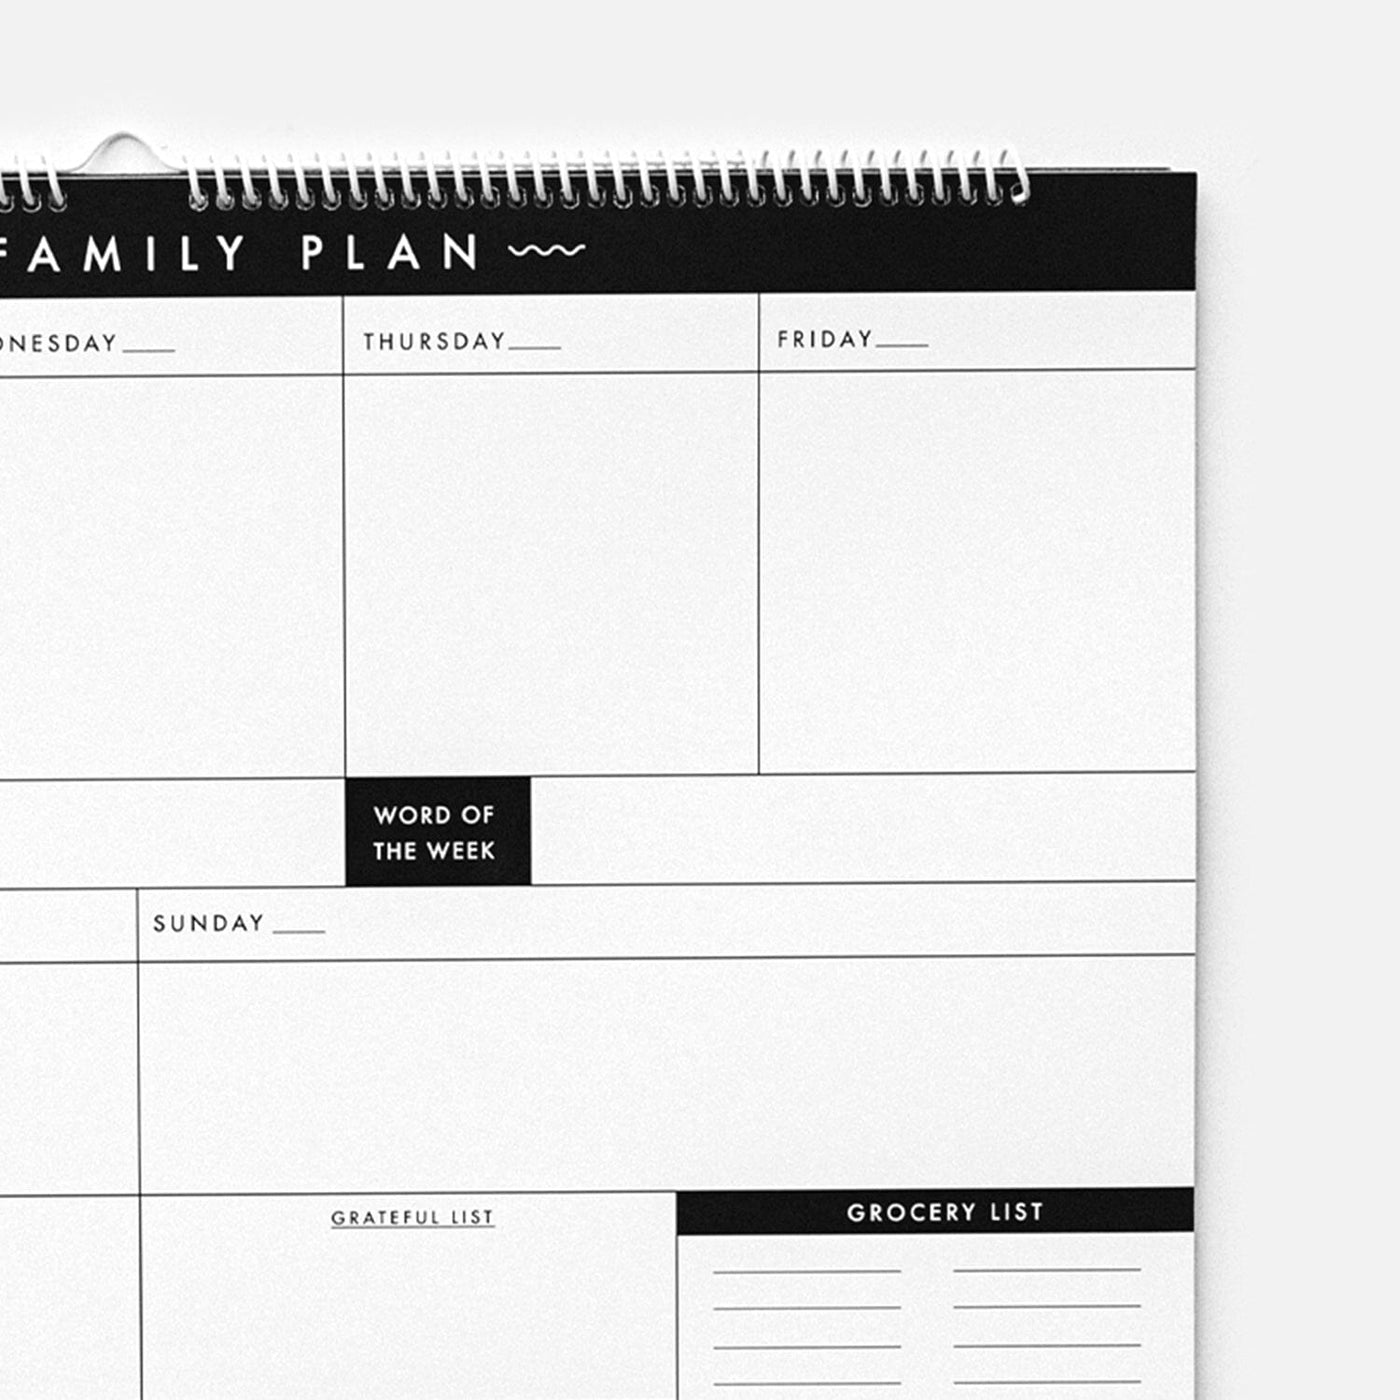 Evergreen Family Calendar - Christian Planner